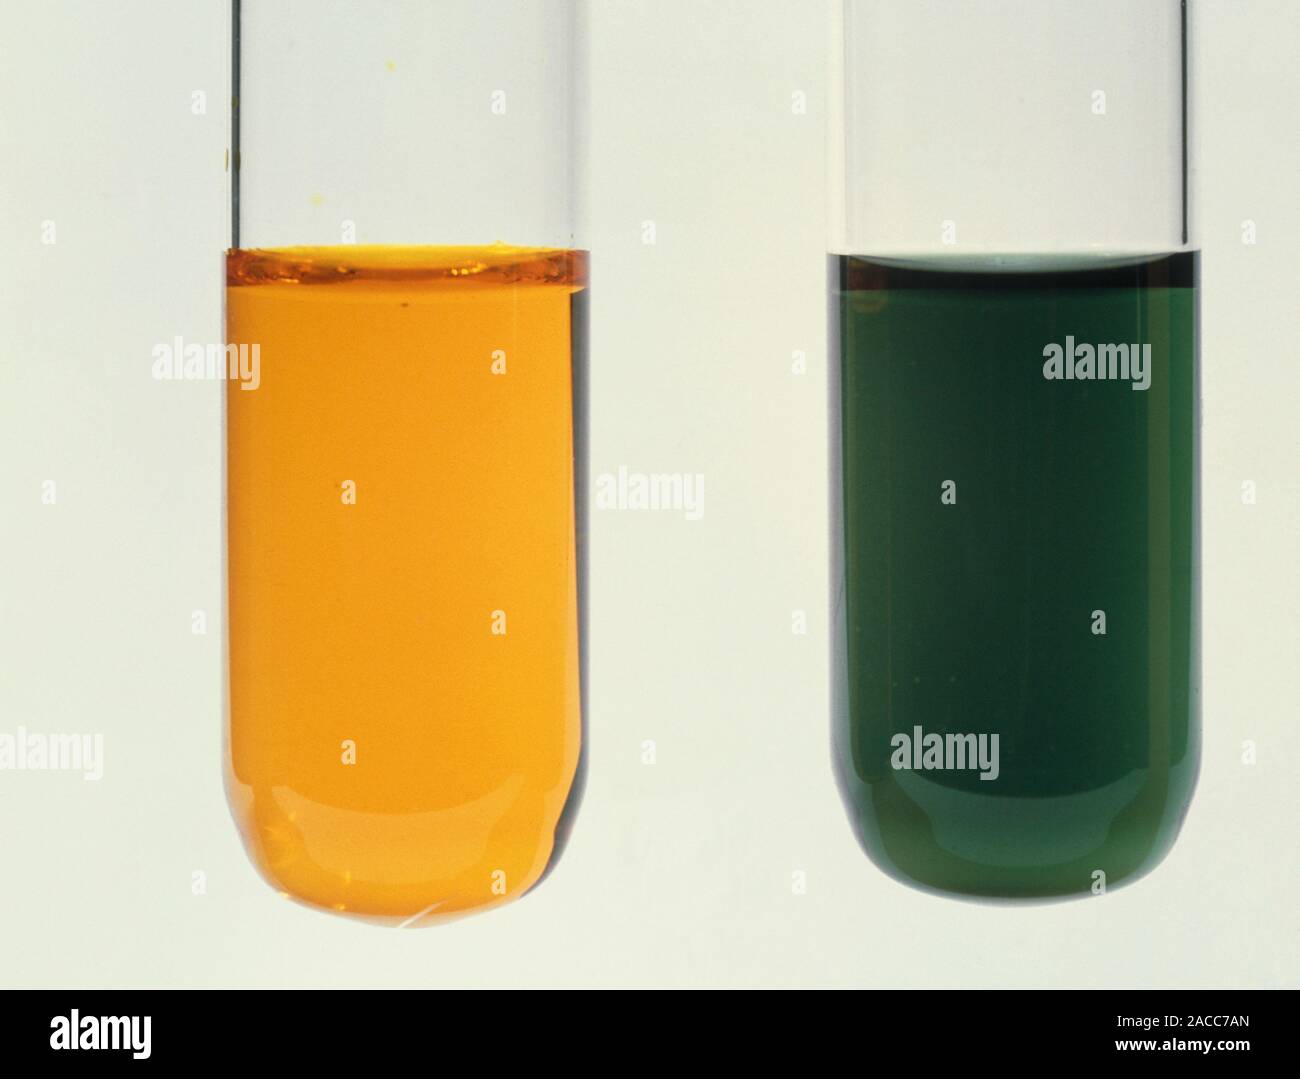 Alkoholtest. Demonstration der Farbe ändern, dass die Oxidation von Alkohol  begleitet durch Kaliumdichromat (K2Cr2O7, Orange). Die Stockfotografie -  Alamy